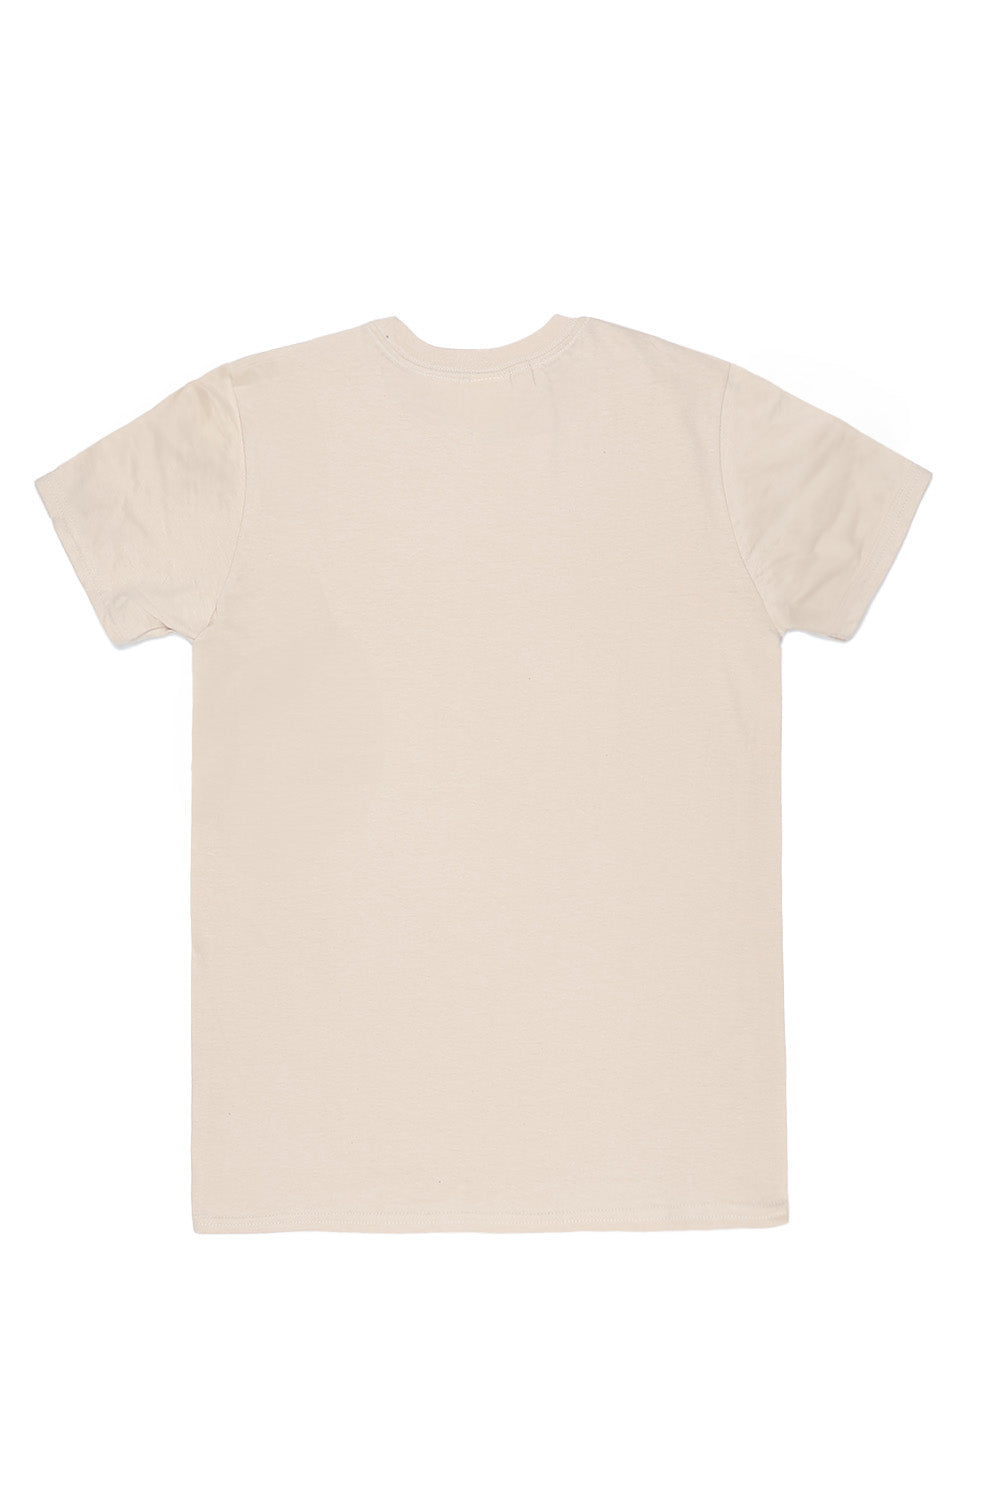 Illinois T-Shirt in Sand (Custom Packs)